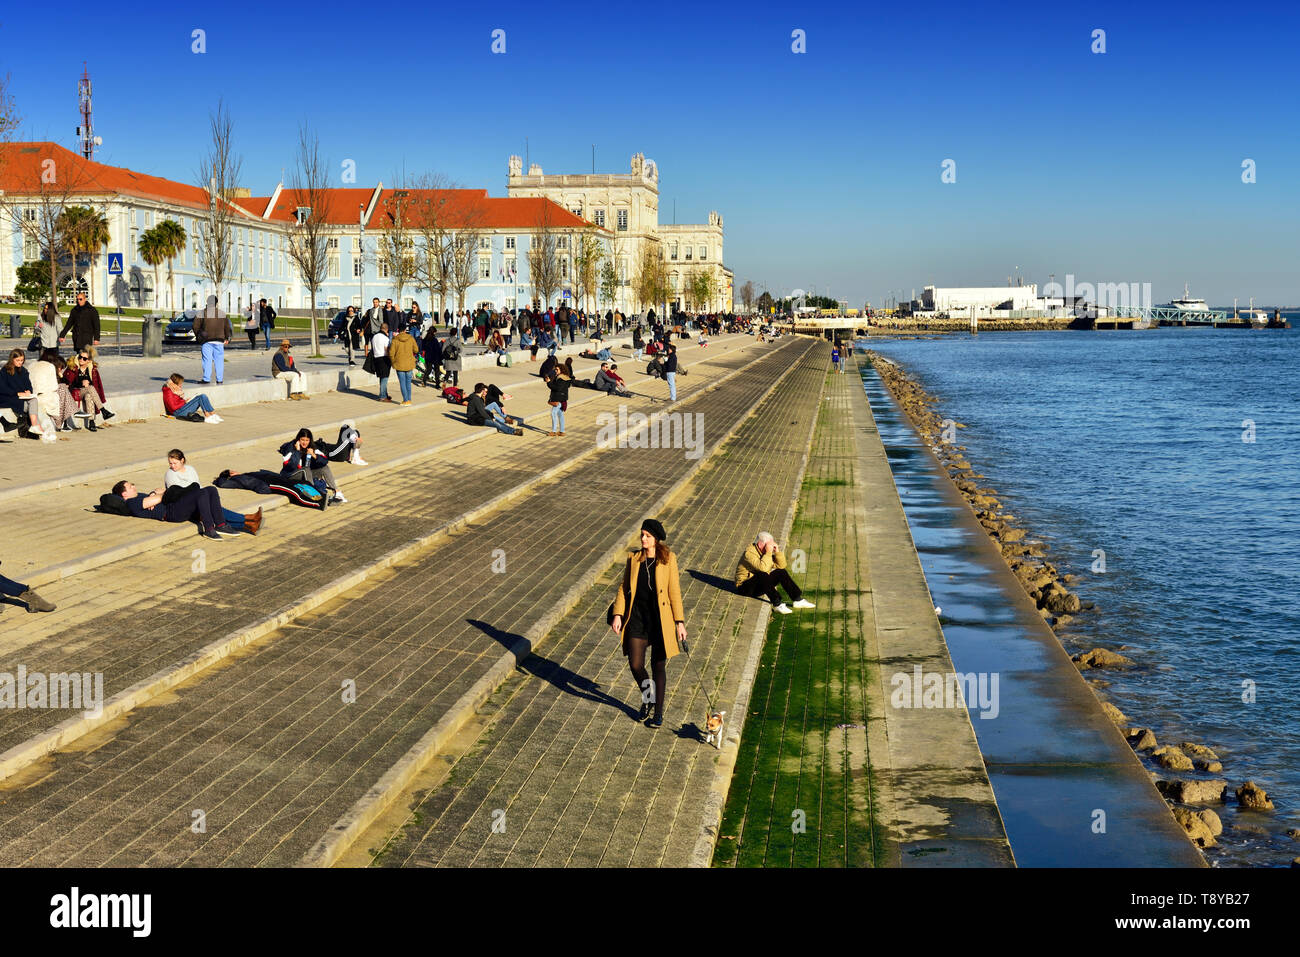 Ribeira das Naus esplanade, along the Tagus river. Lisbon, Portugal Stock Photo